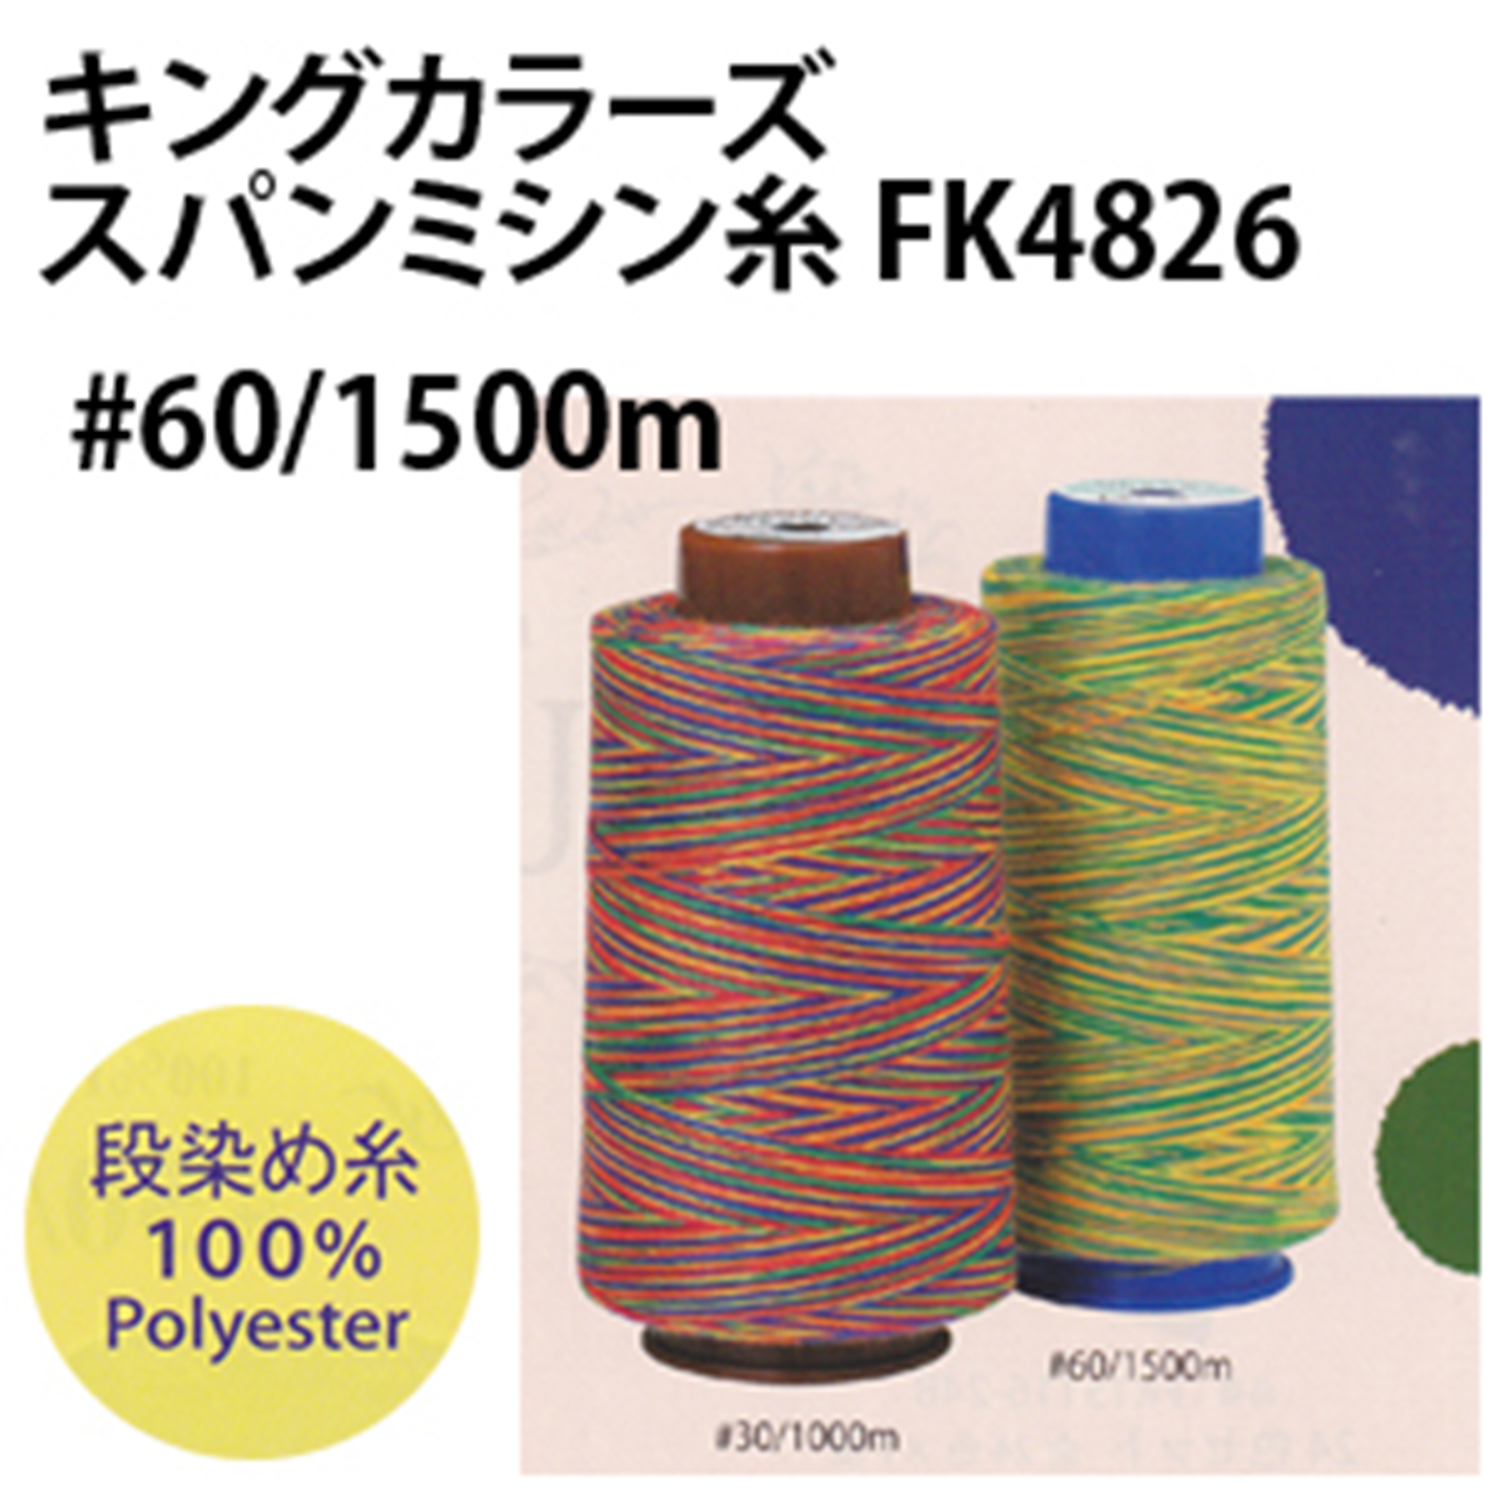 FK4826 キングカラーズスパンミシン糸 60/1500m (本)